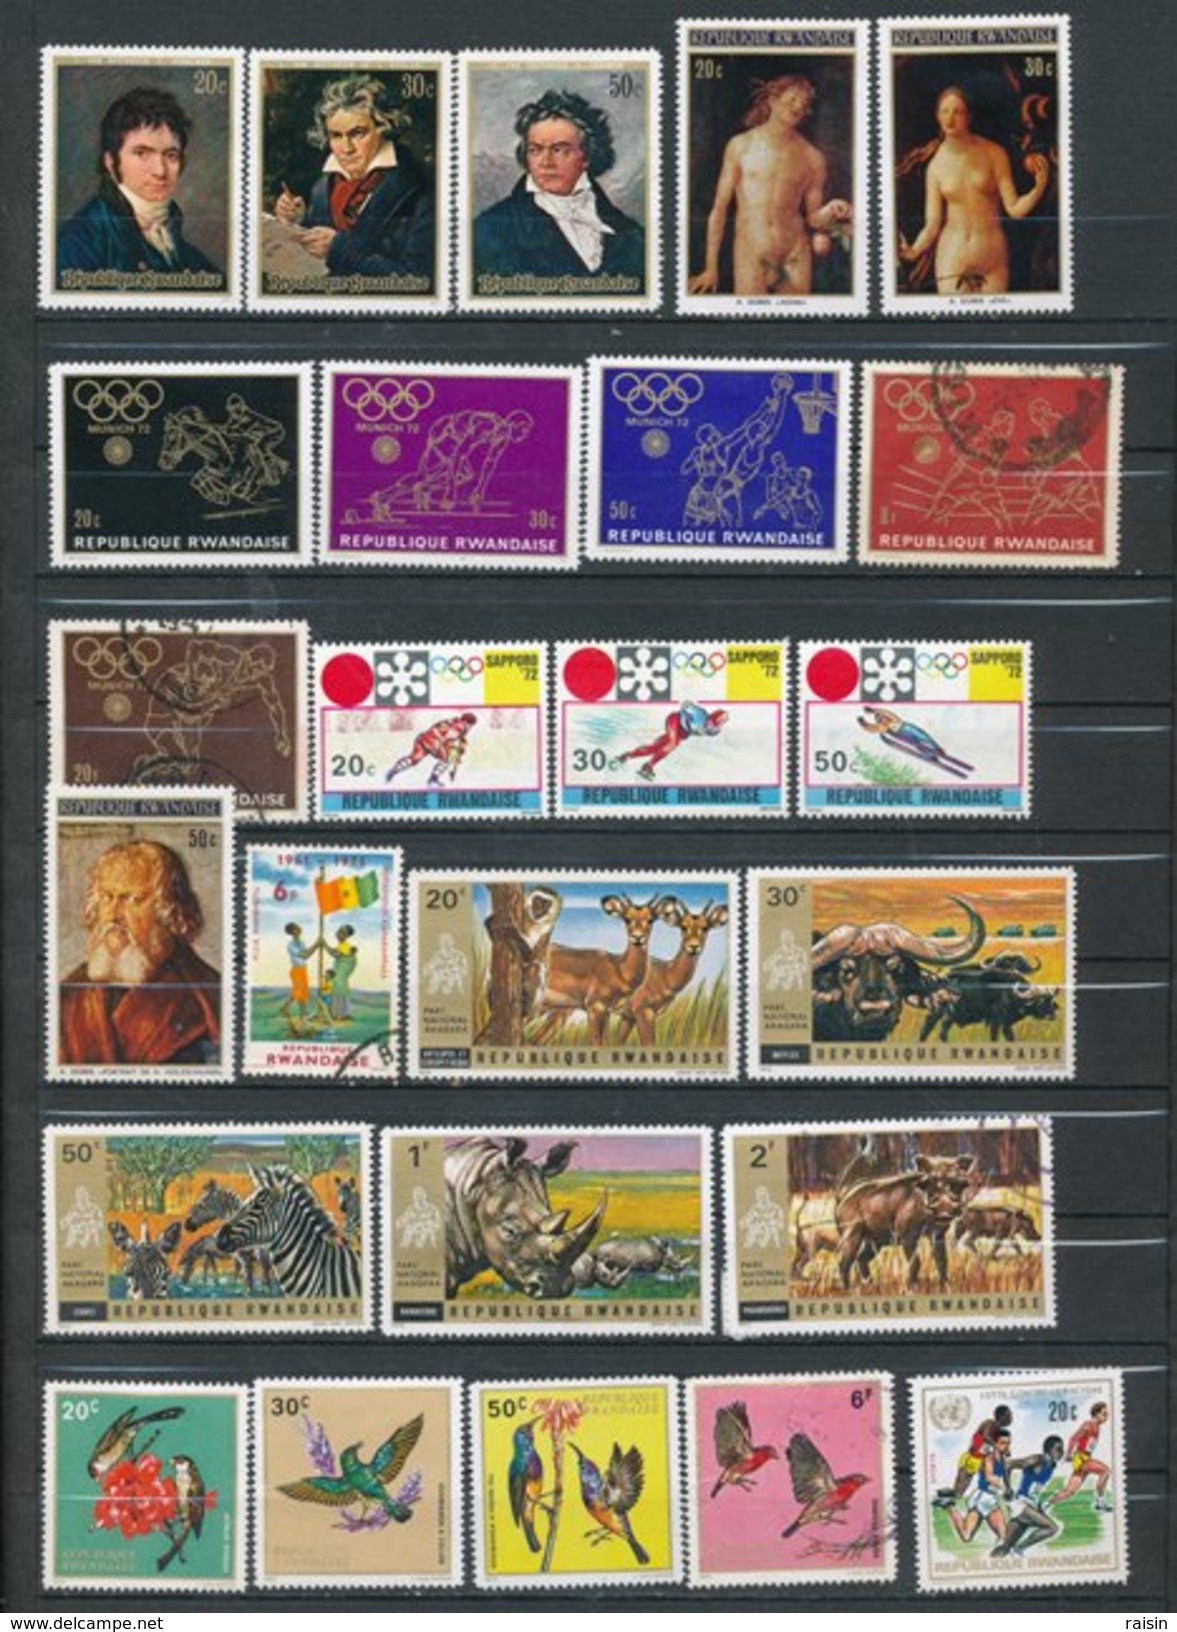 Rwanda Petite collection lot de plus de 350 timbres